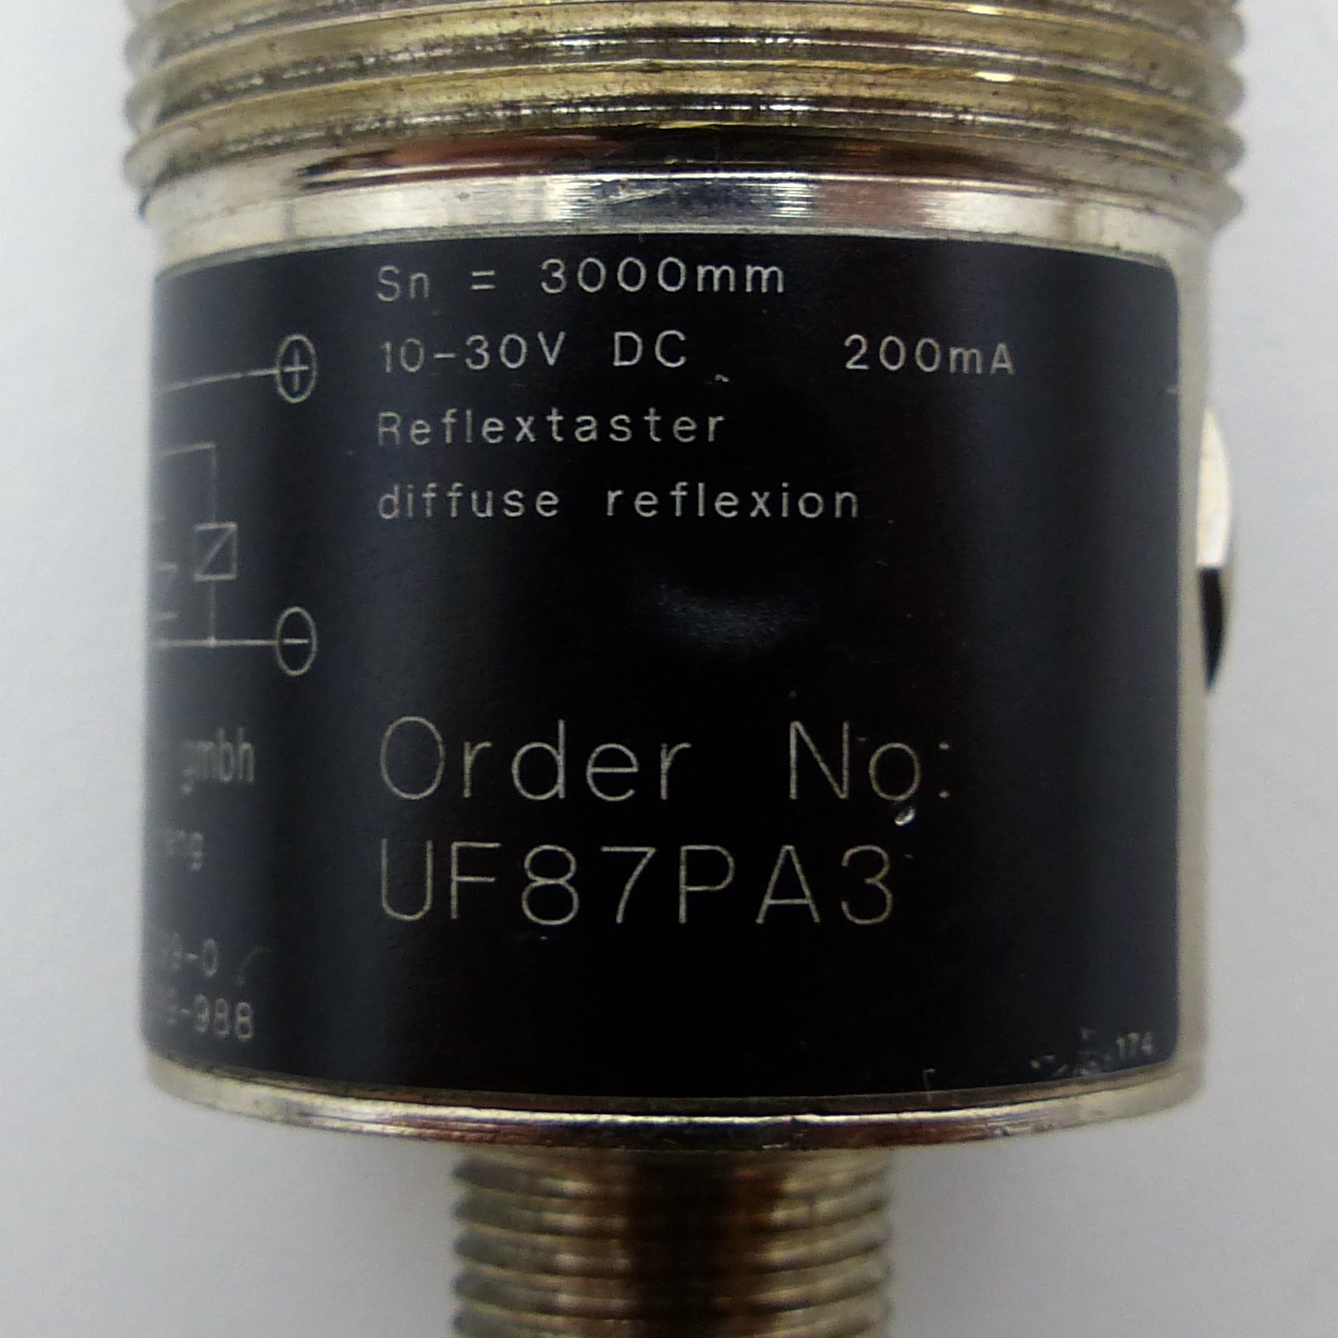 Reflex Scanner UF87PA3 